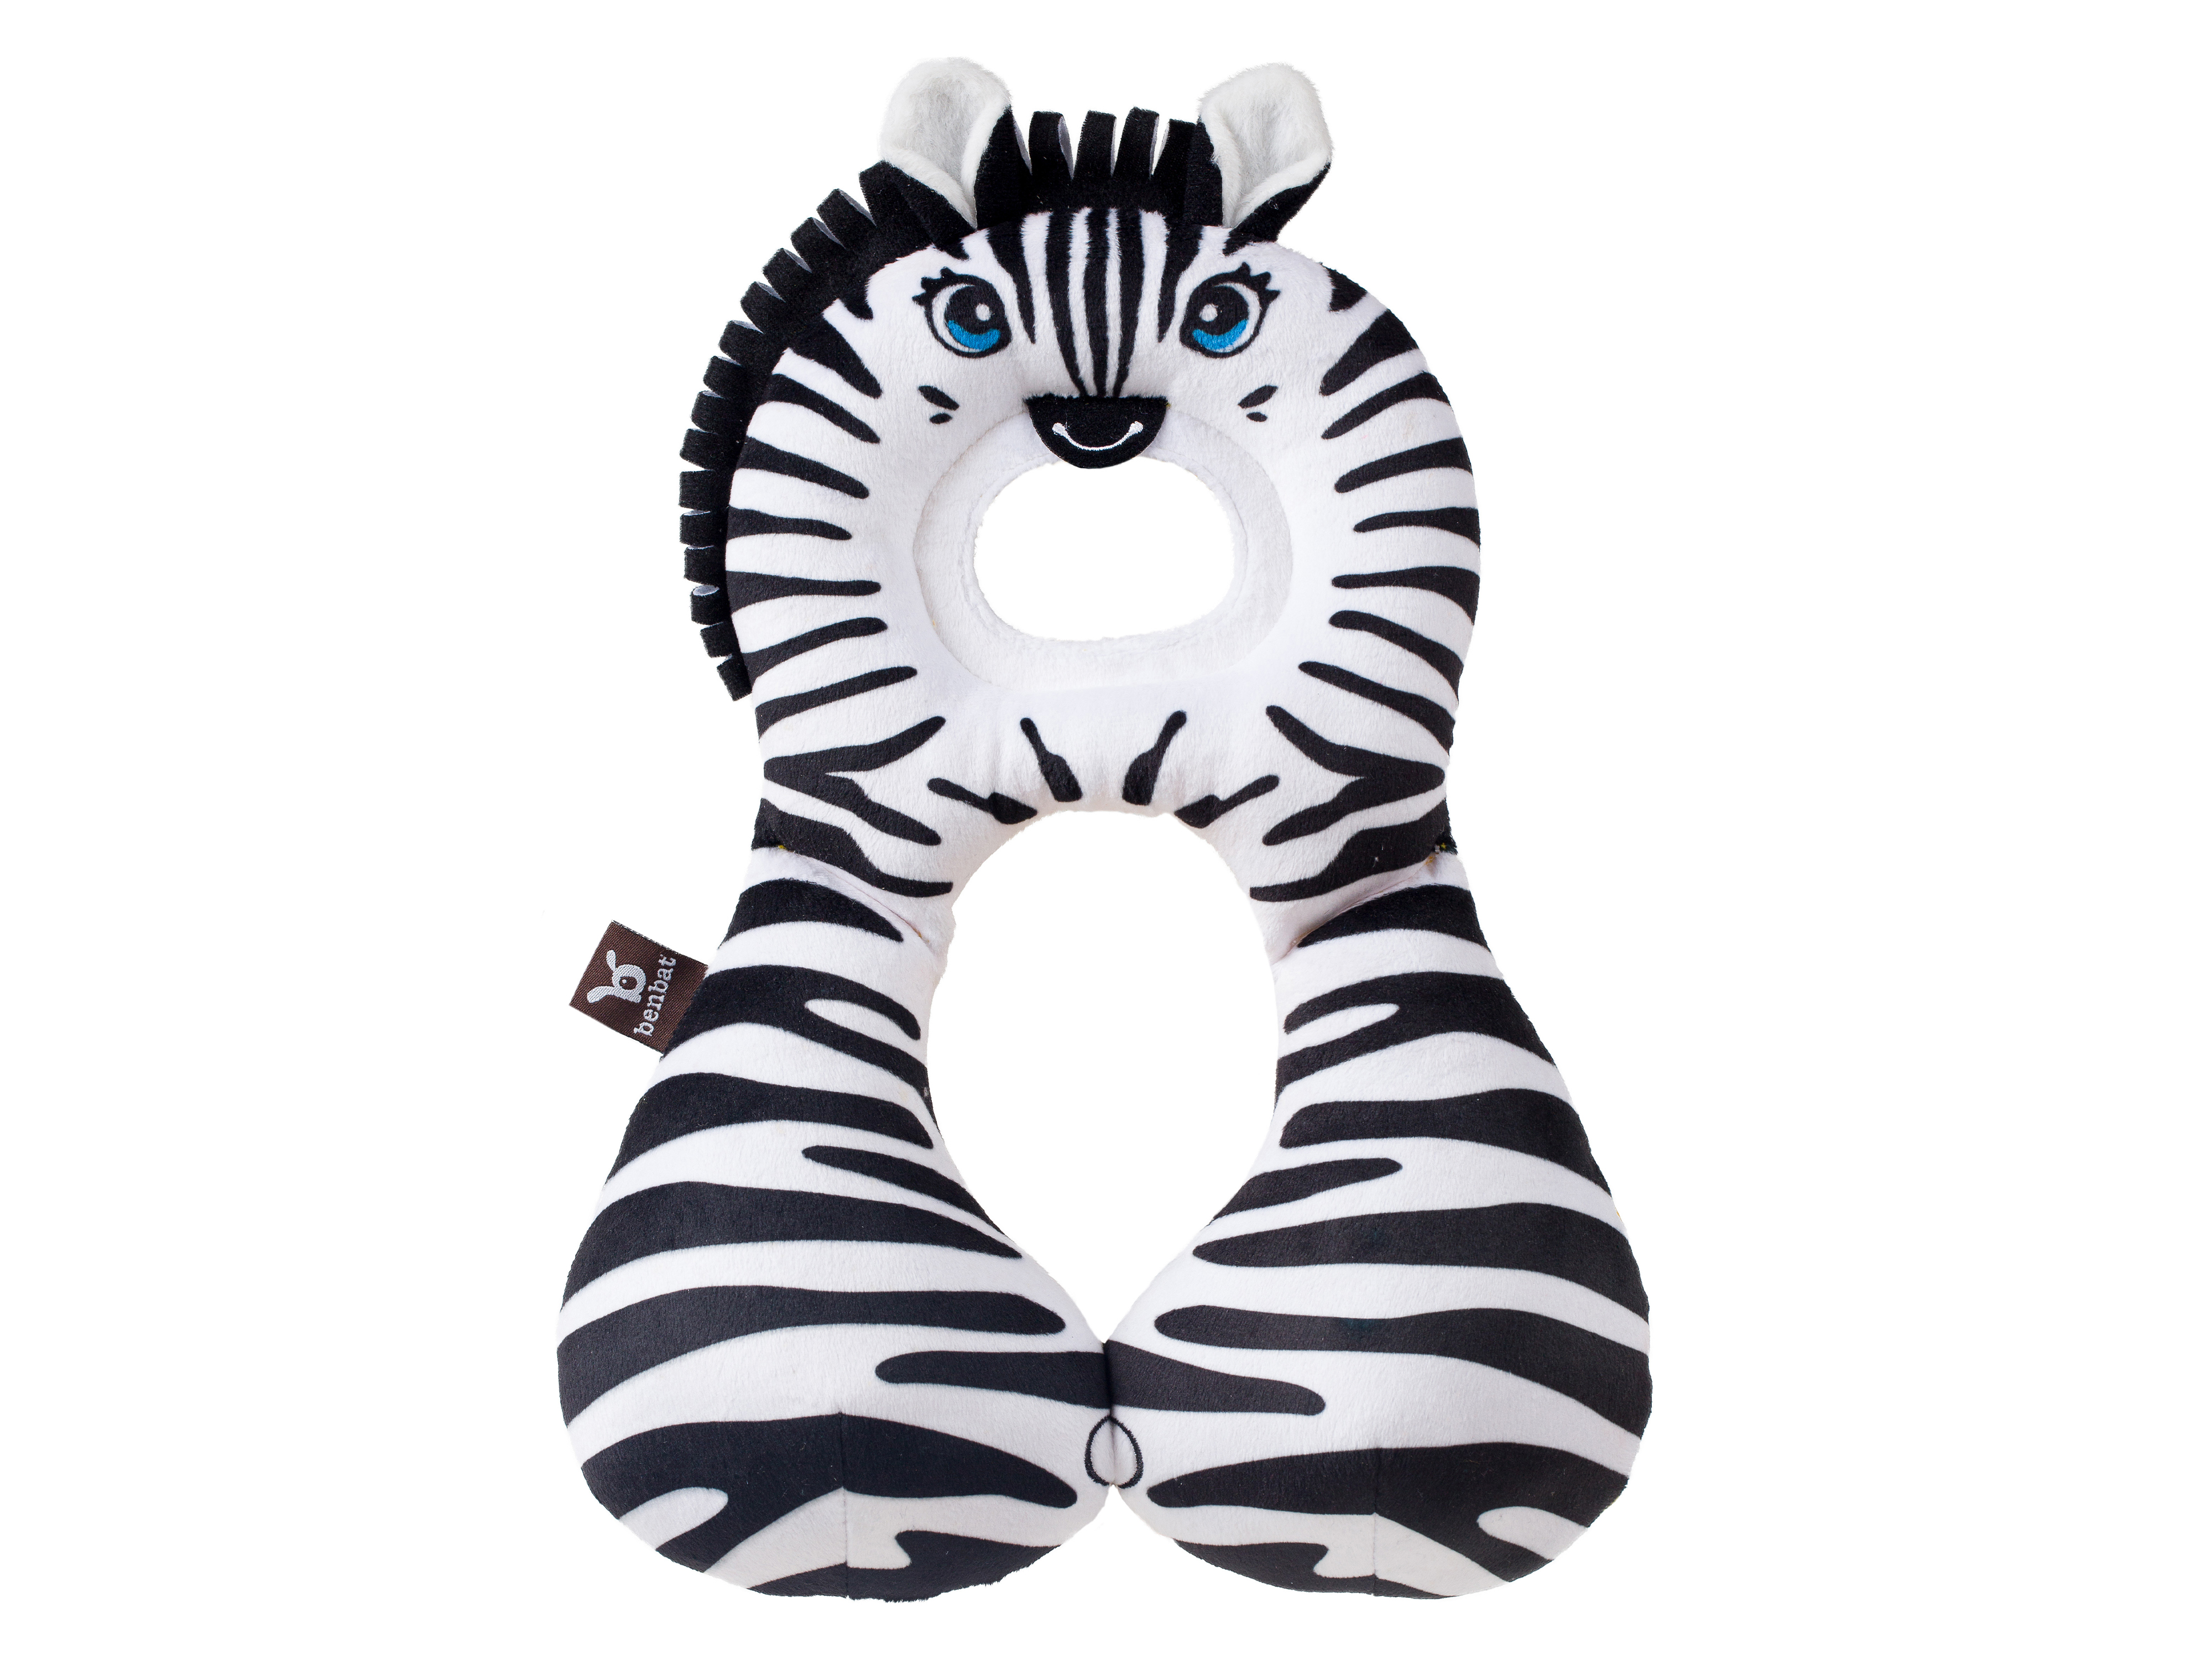 Benbat Nakkepute Zebra 1-4 år, 1 stk.